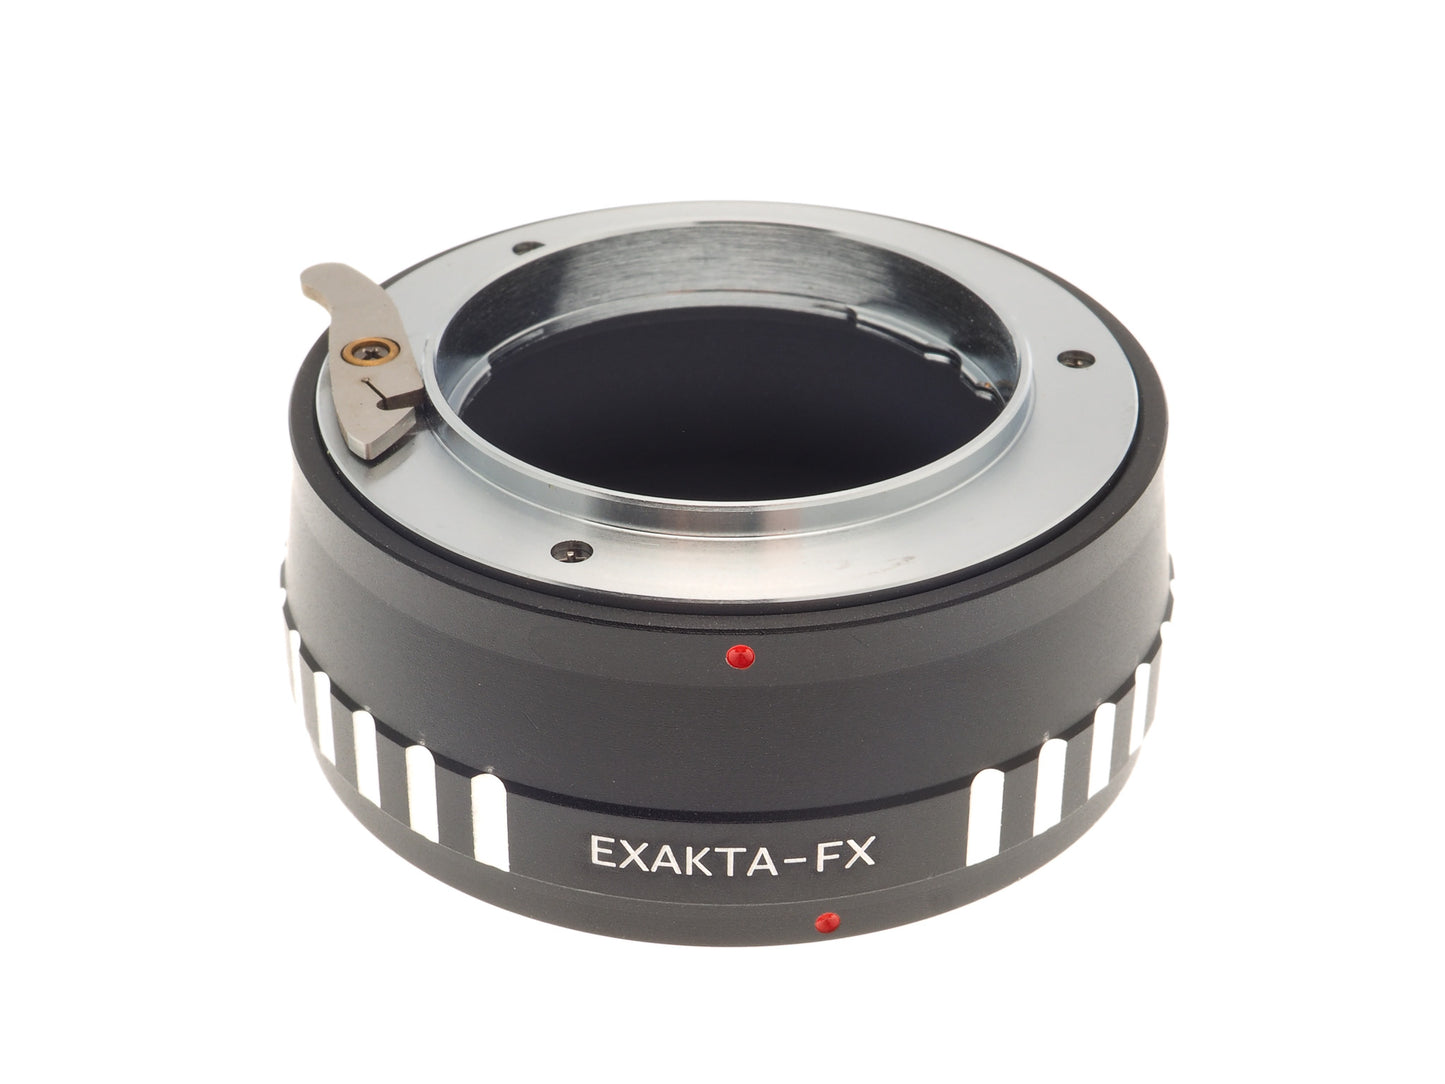 Generic Exakta - Fuji FX (EXA-FX) Adapter - Lens Adapter